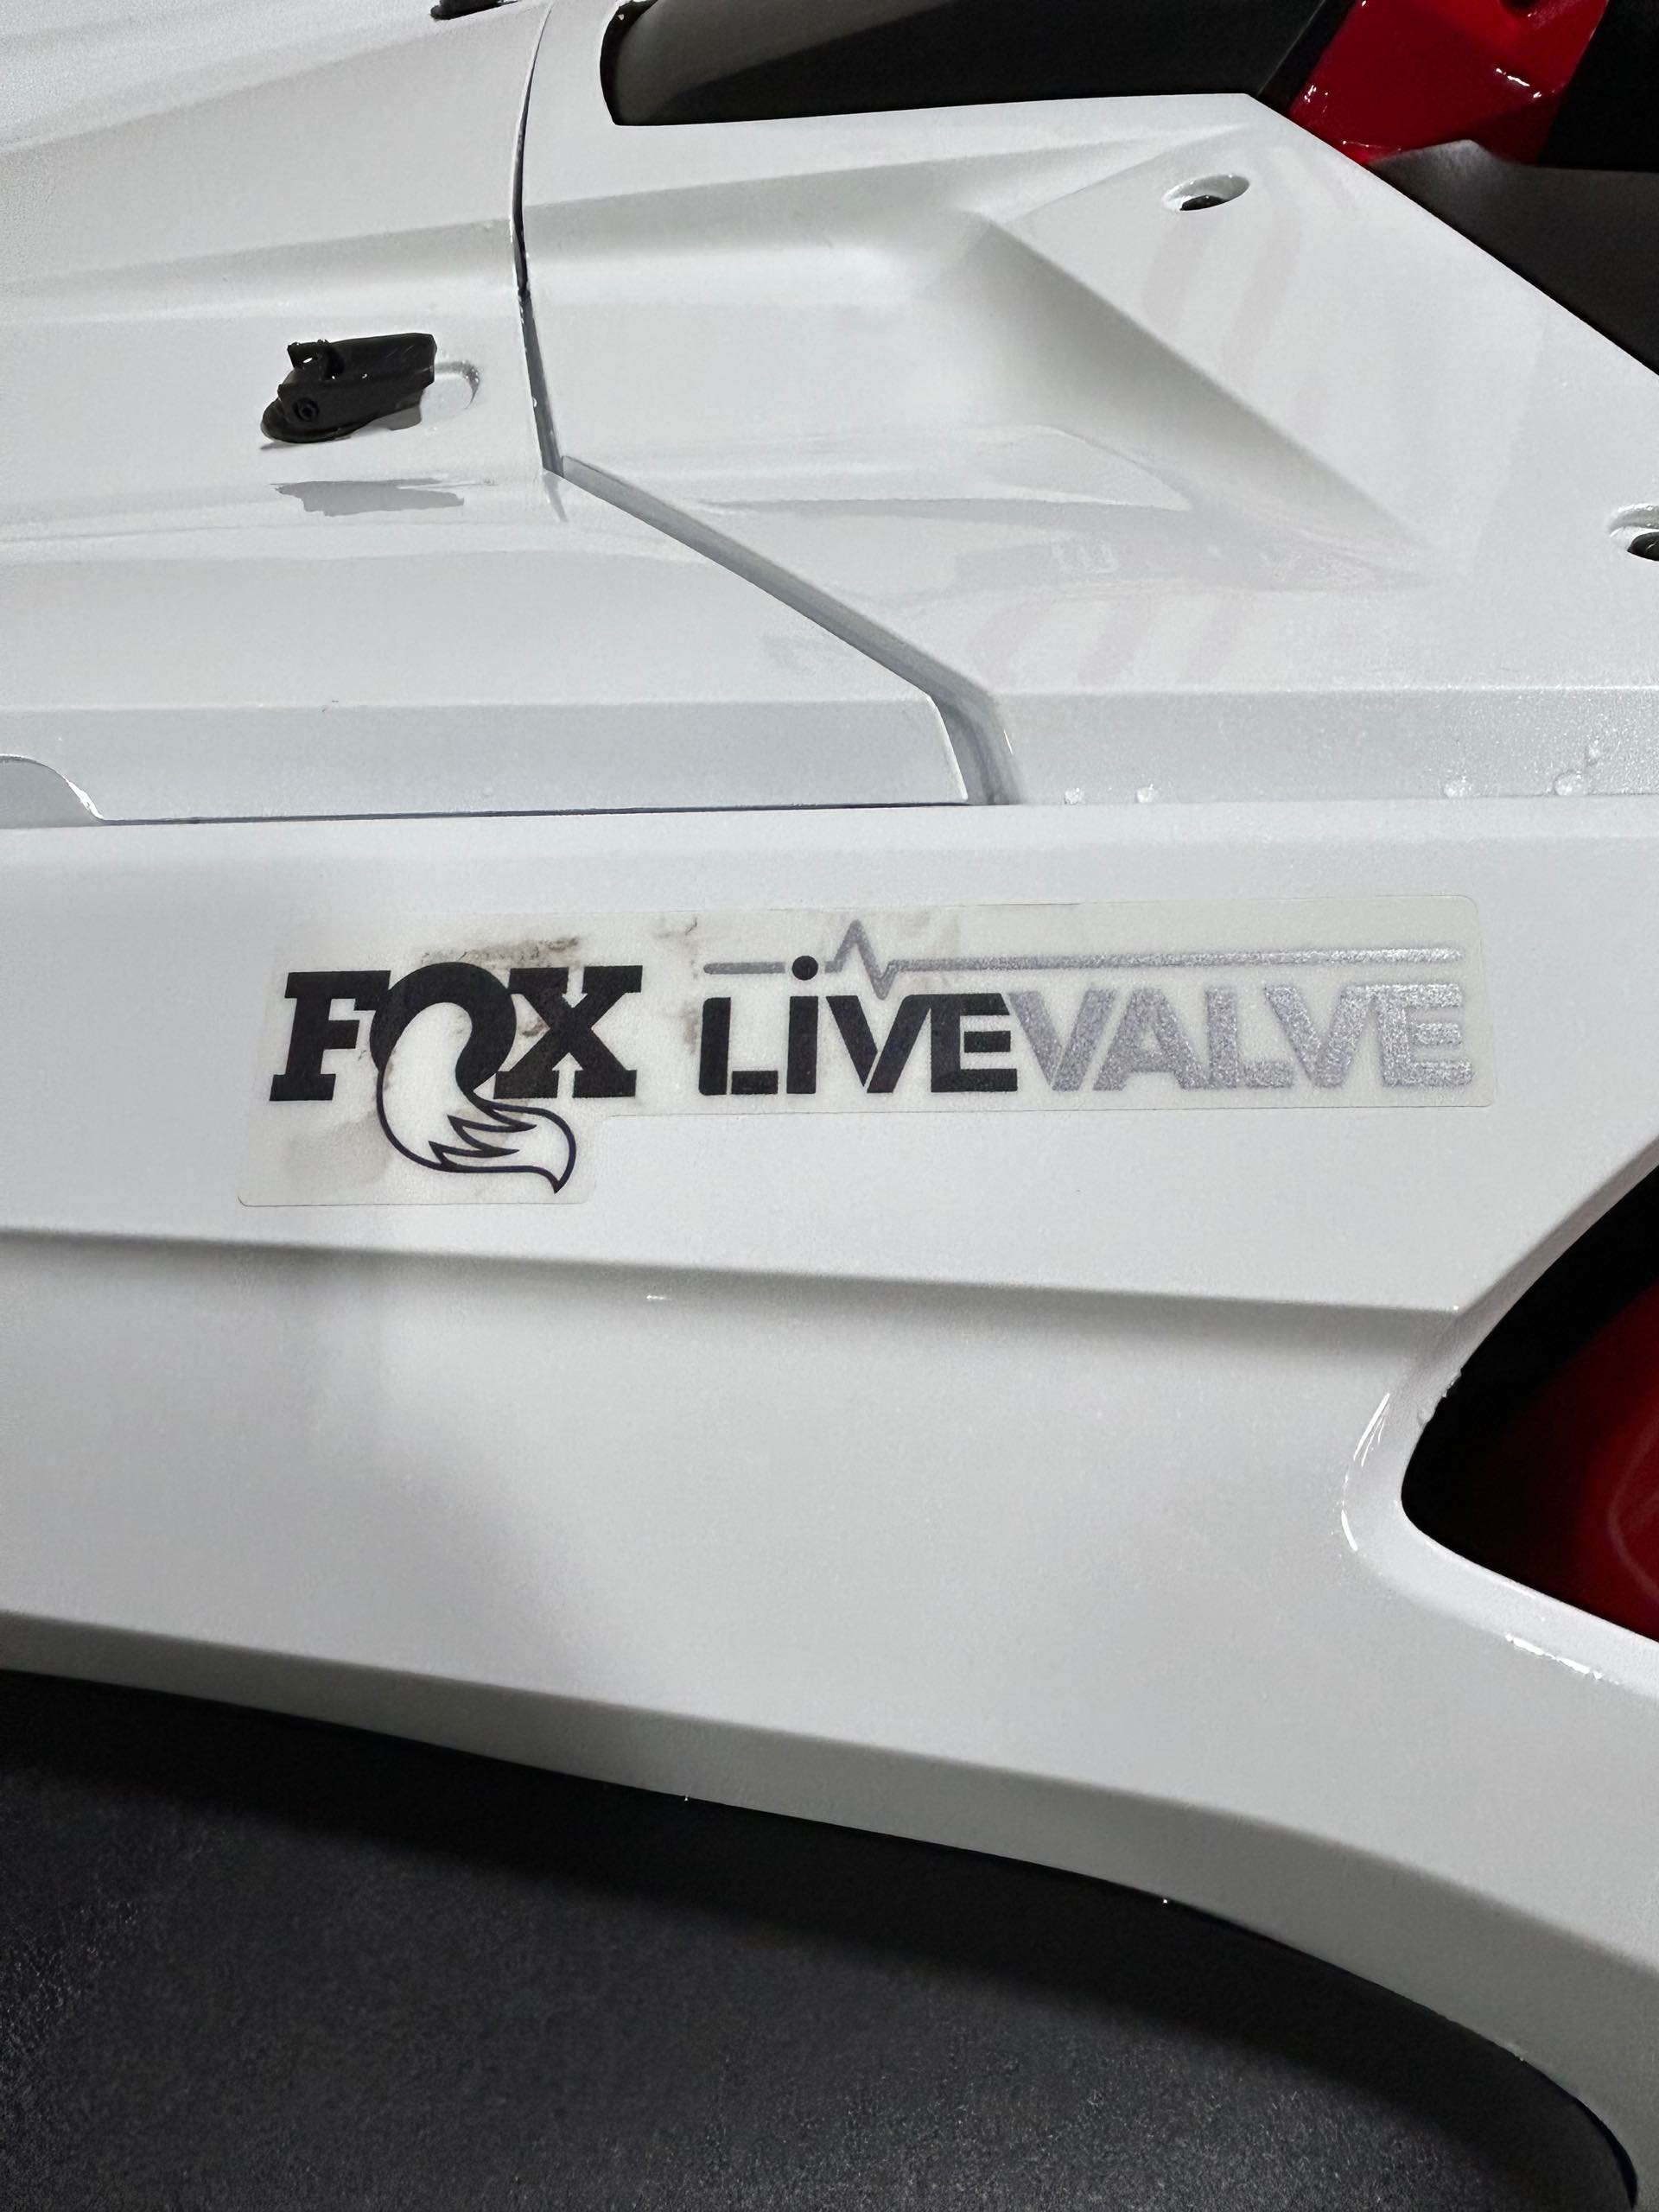 2023 Honda Talon 1000RS FOX Live Valve at Wood Powersports Harrison